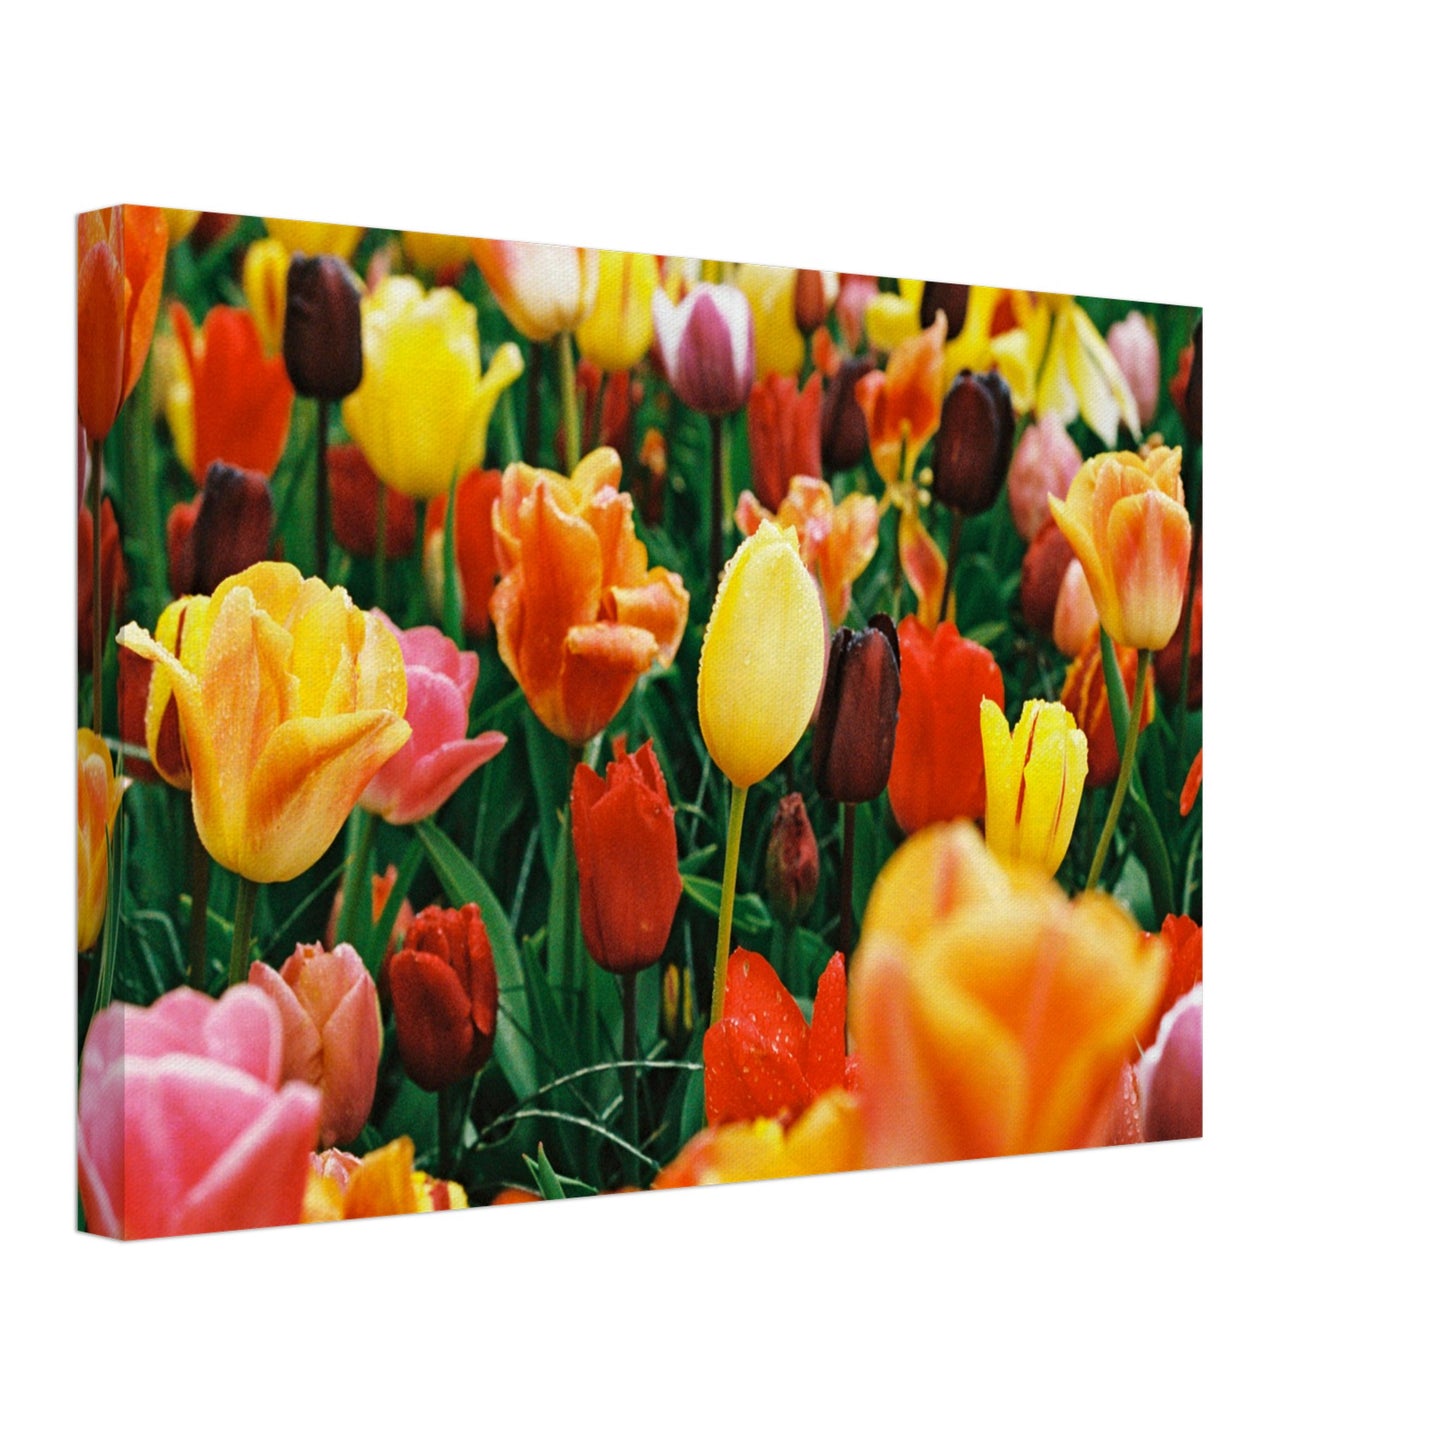 Dutch Tulip Field № 15